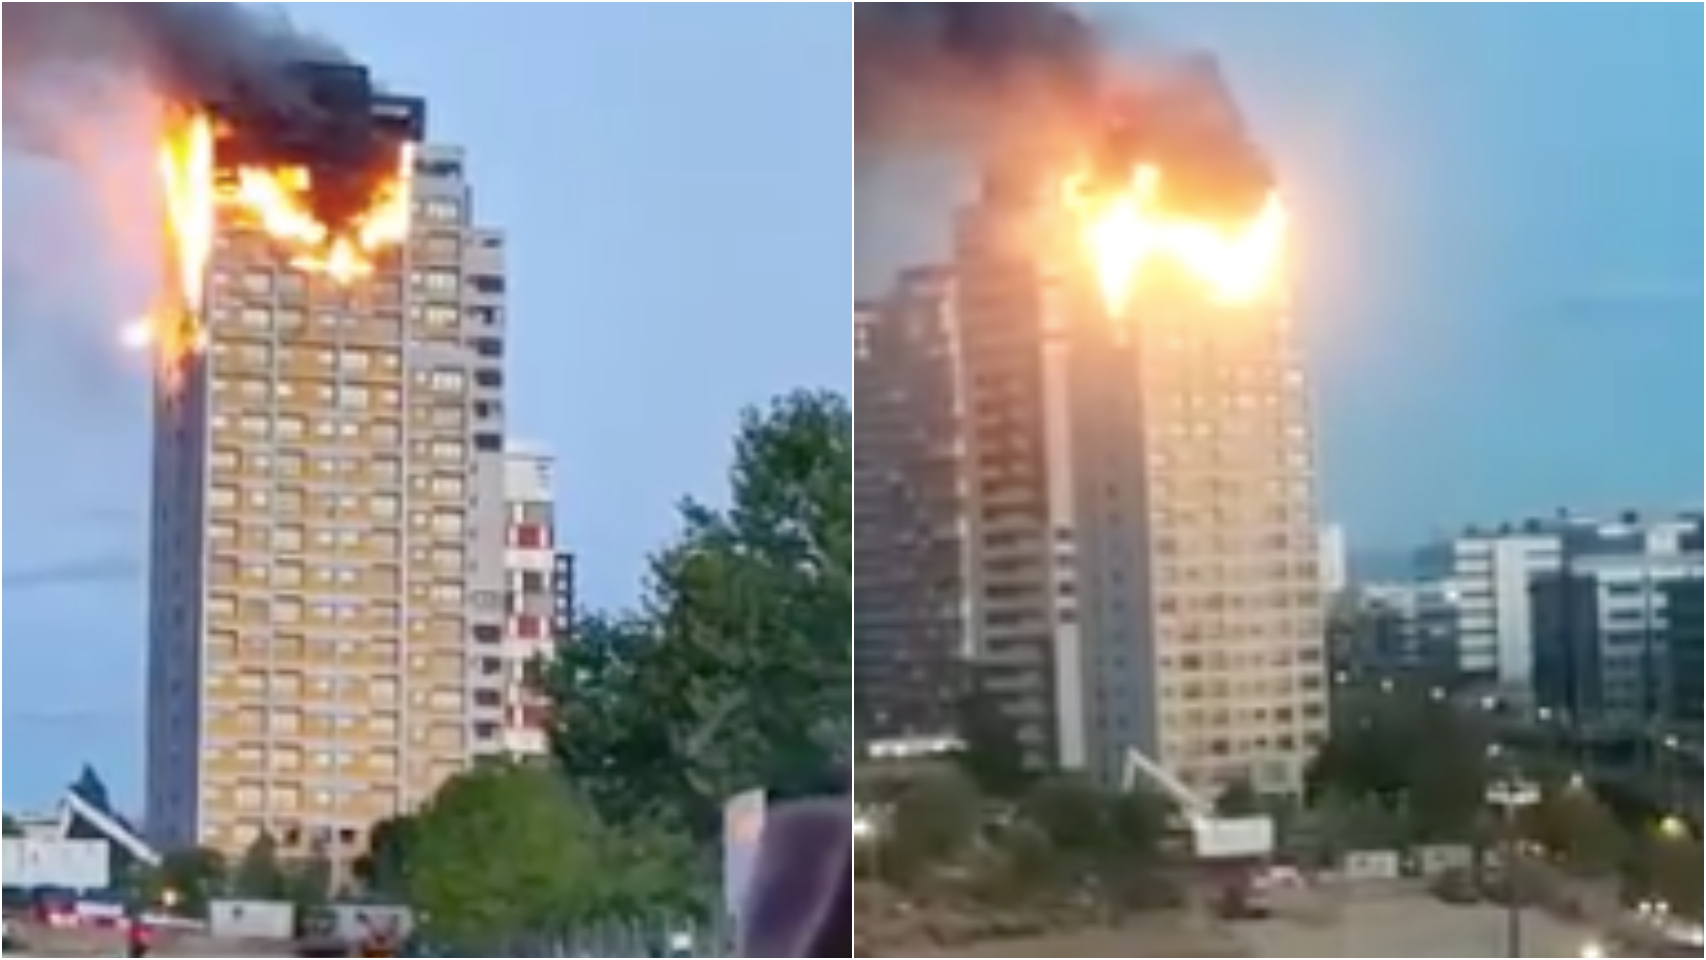 Un gran incendio devora los pisos superiores de una torre del norte de Madrid